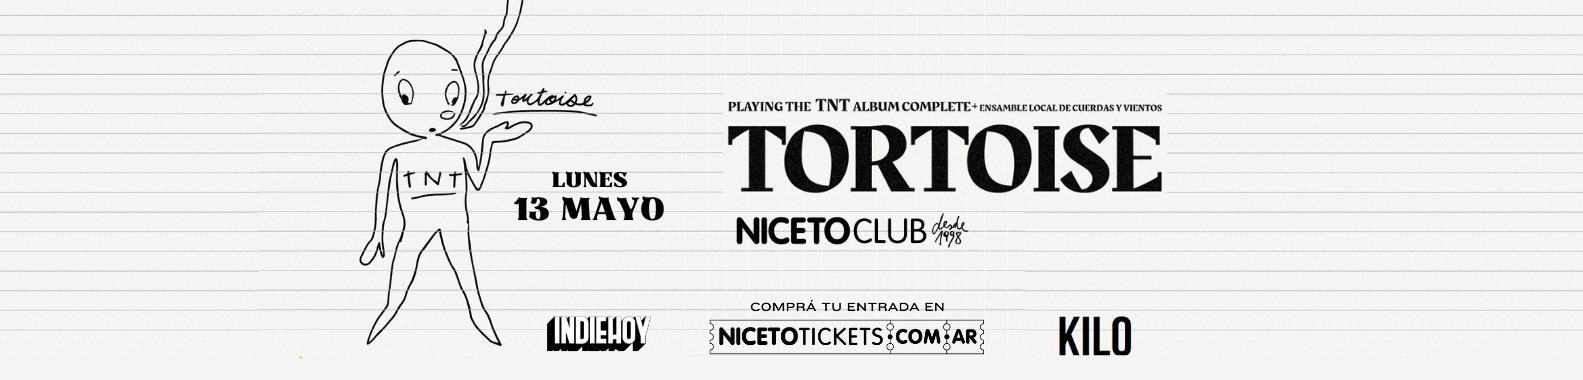 TORTOISE EN ARGENTINA - 30 AÑOS DE SU DISCO ¨TNT¨ EN NICETO CLUB (+18)